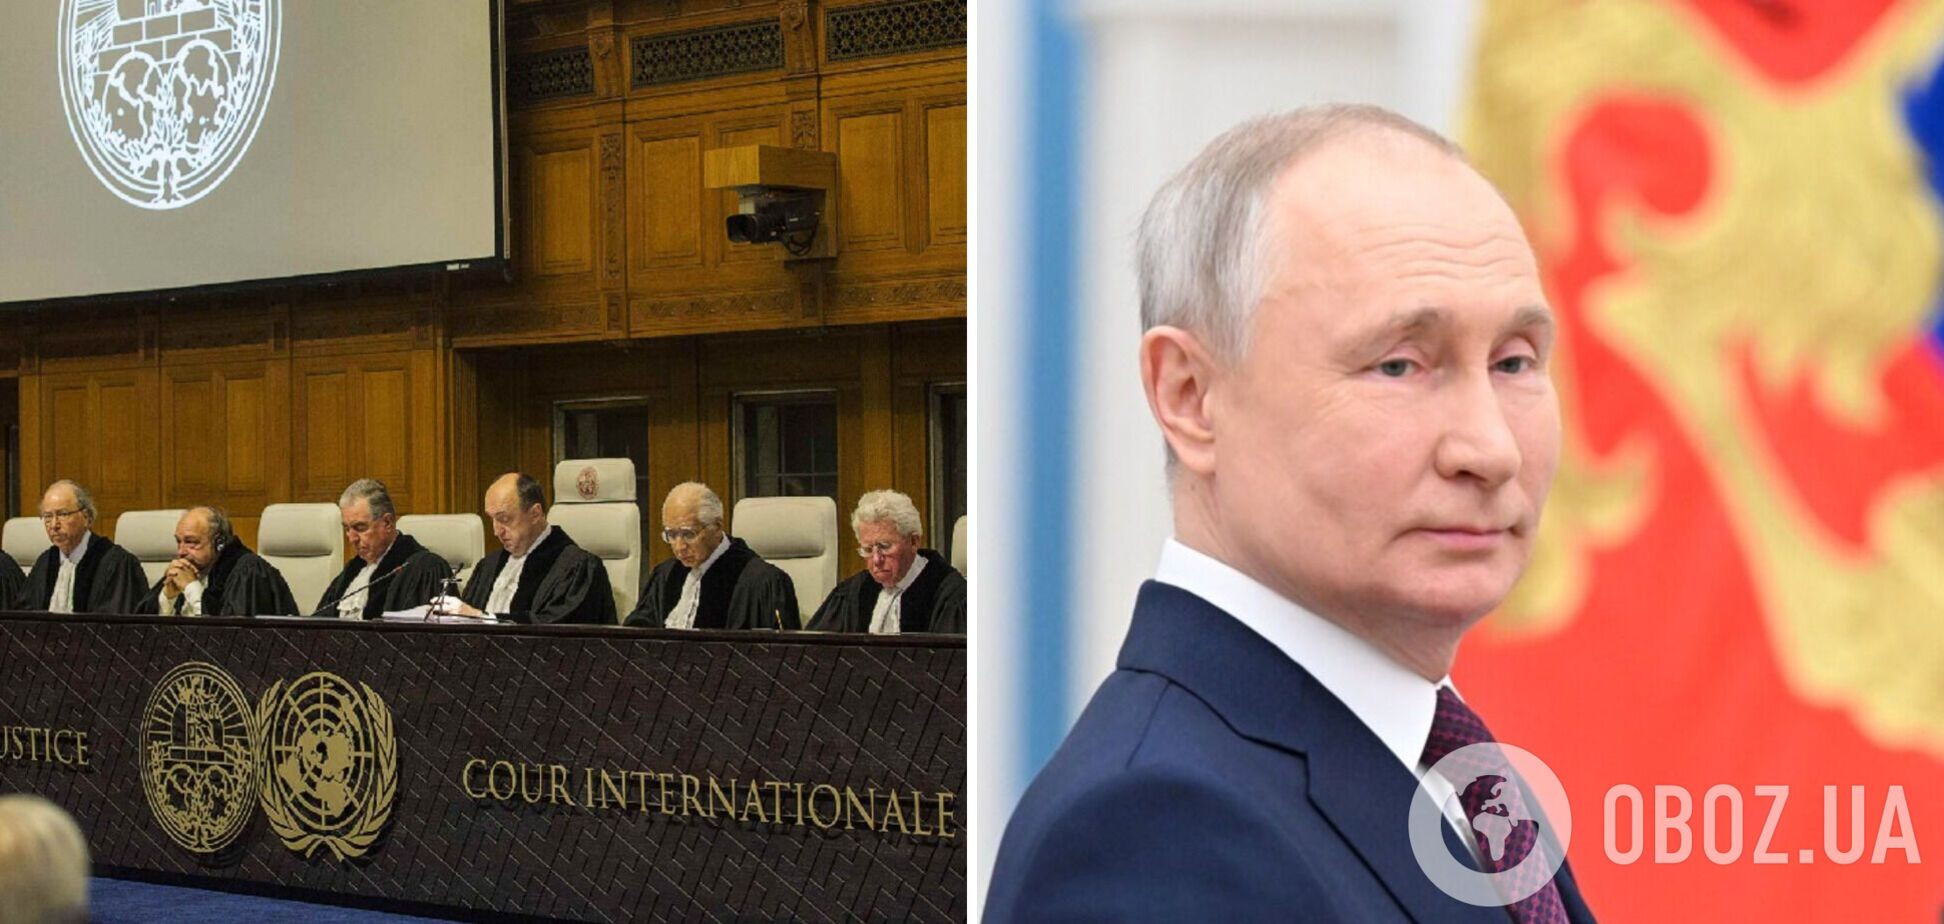 Є всі факти, щоб притягнути Росію до відповідальності у Міжнародному суді ООН, – представниця України